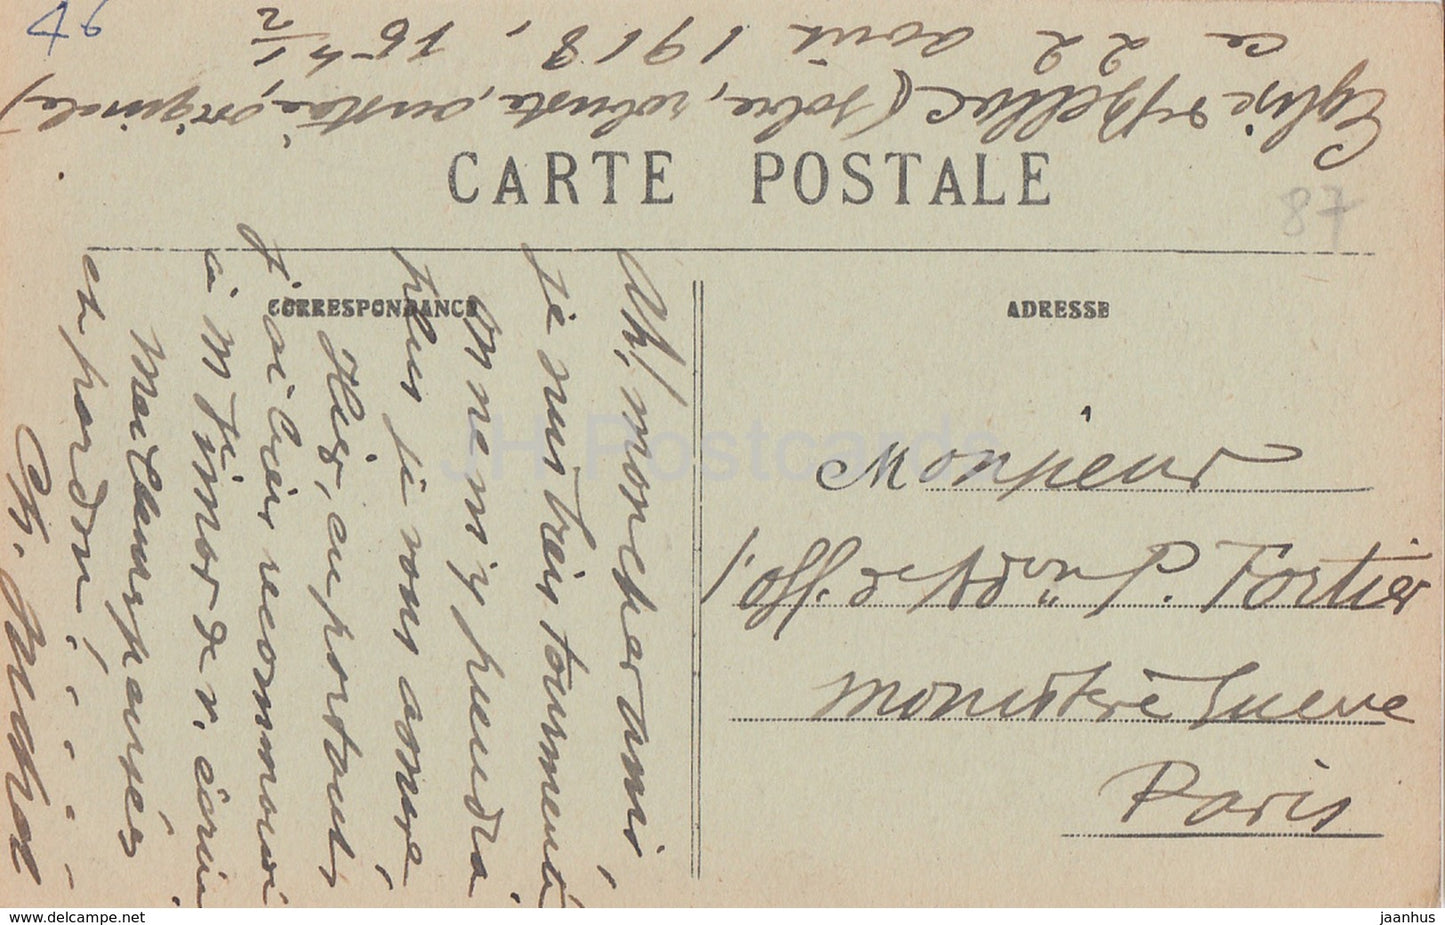 Environs de Bellac - Chateau de Bagnac - castle - old postcard - 1918 - France - used